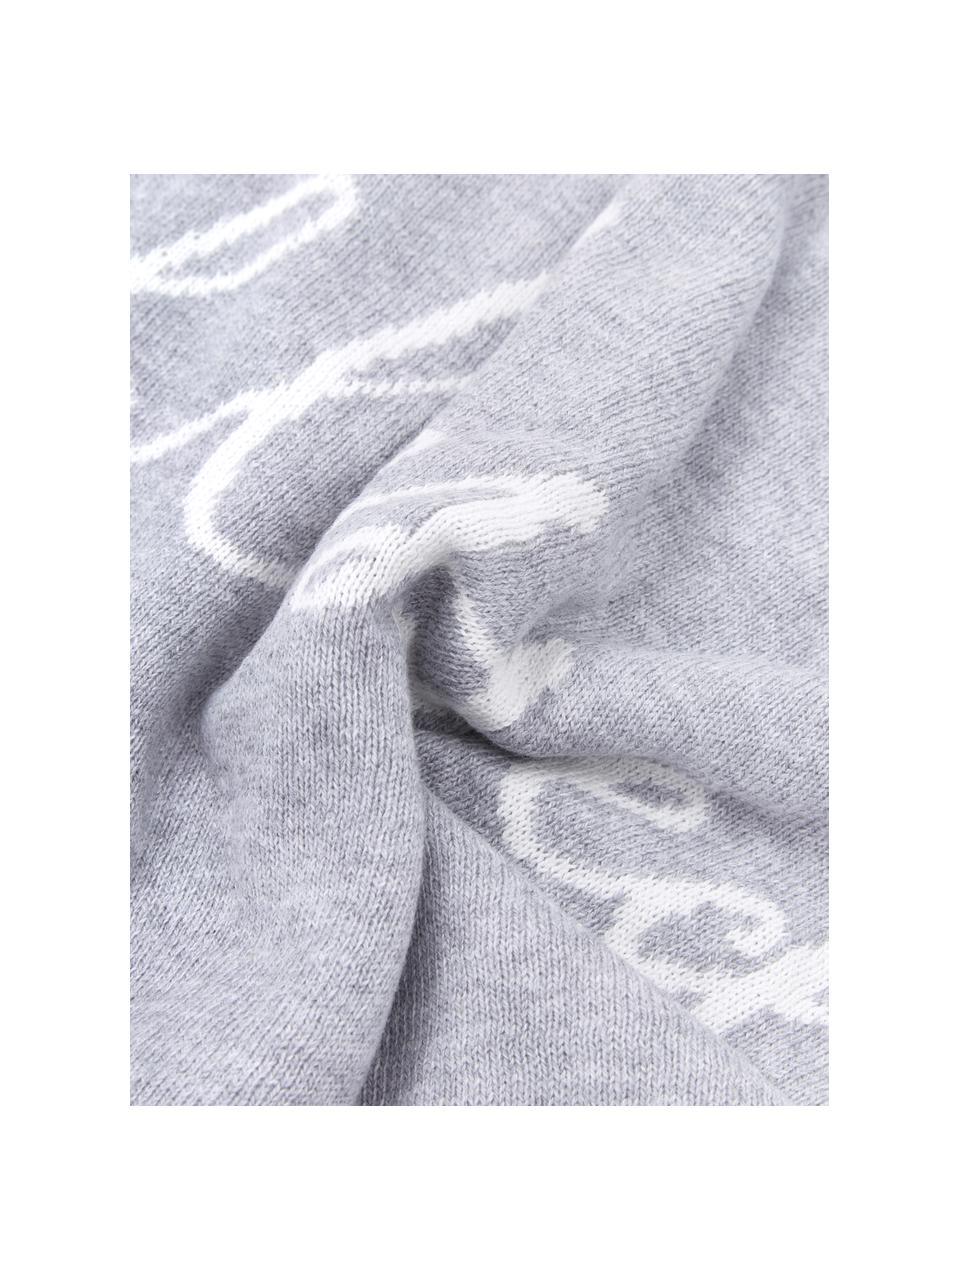 Federa reversibile fatta a maglia fine Besina, 100% cotone, Grigio chiaro, bianco crema, Larg. 30 x Lung. 50 cm